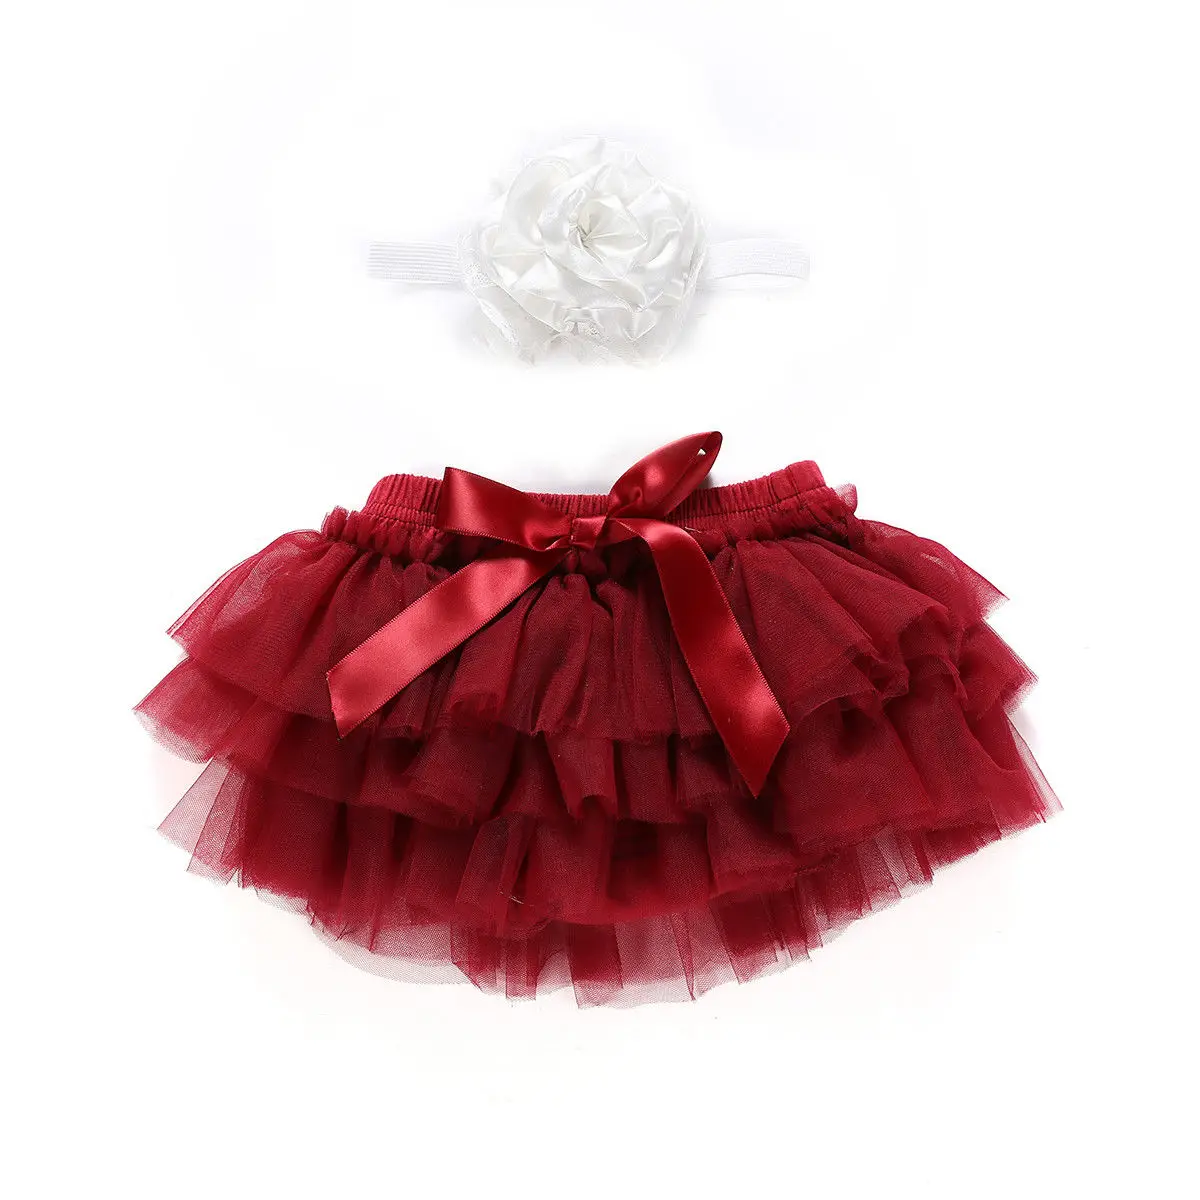 Pudcoco/Новое милое многослойное балетное кружевное танцевальное платье для новорожденных девочек, штаны, трусики, юбка-пачка, реквизит для фотосессии - Цвет: Красный